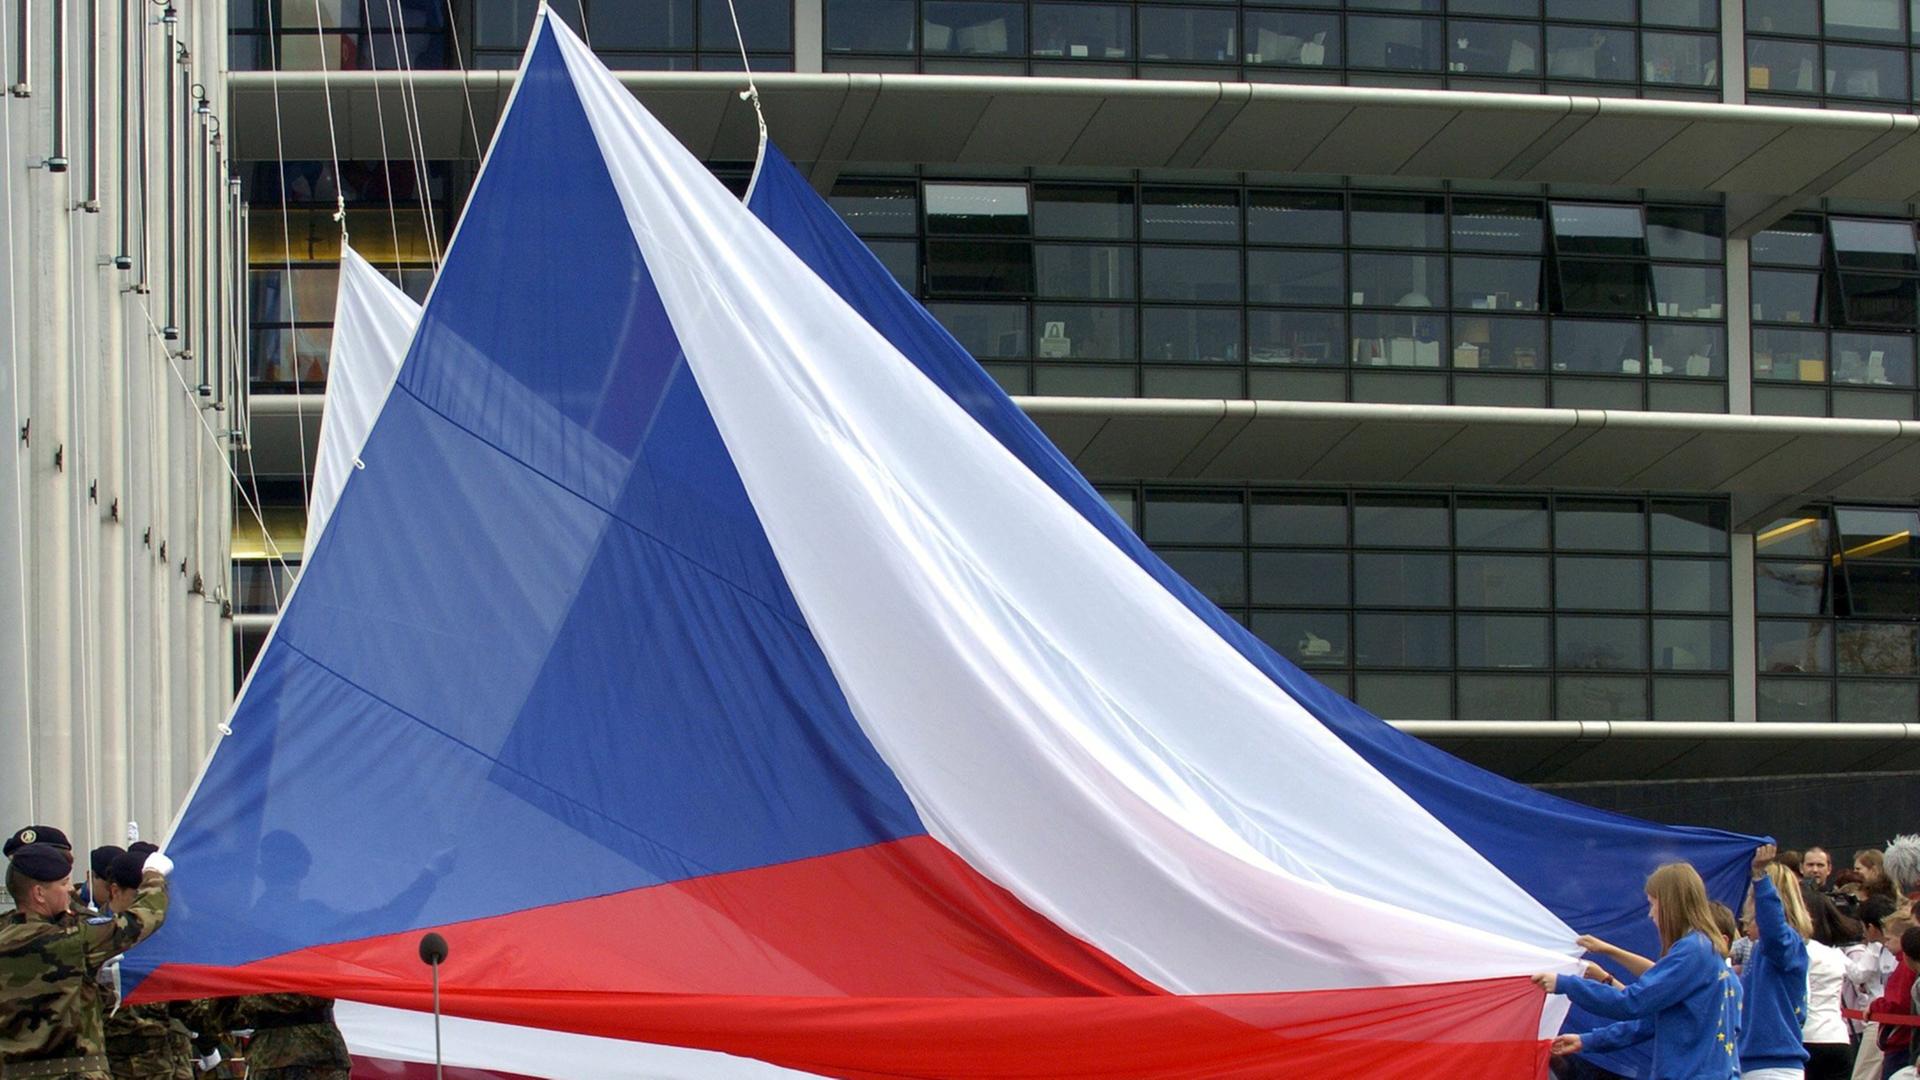 Die tschechische Fahne bei ihrer feierlichen Enthüllung im Jahr 2004, als das Land in die EU aufgenommen wurde.